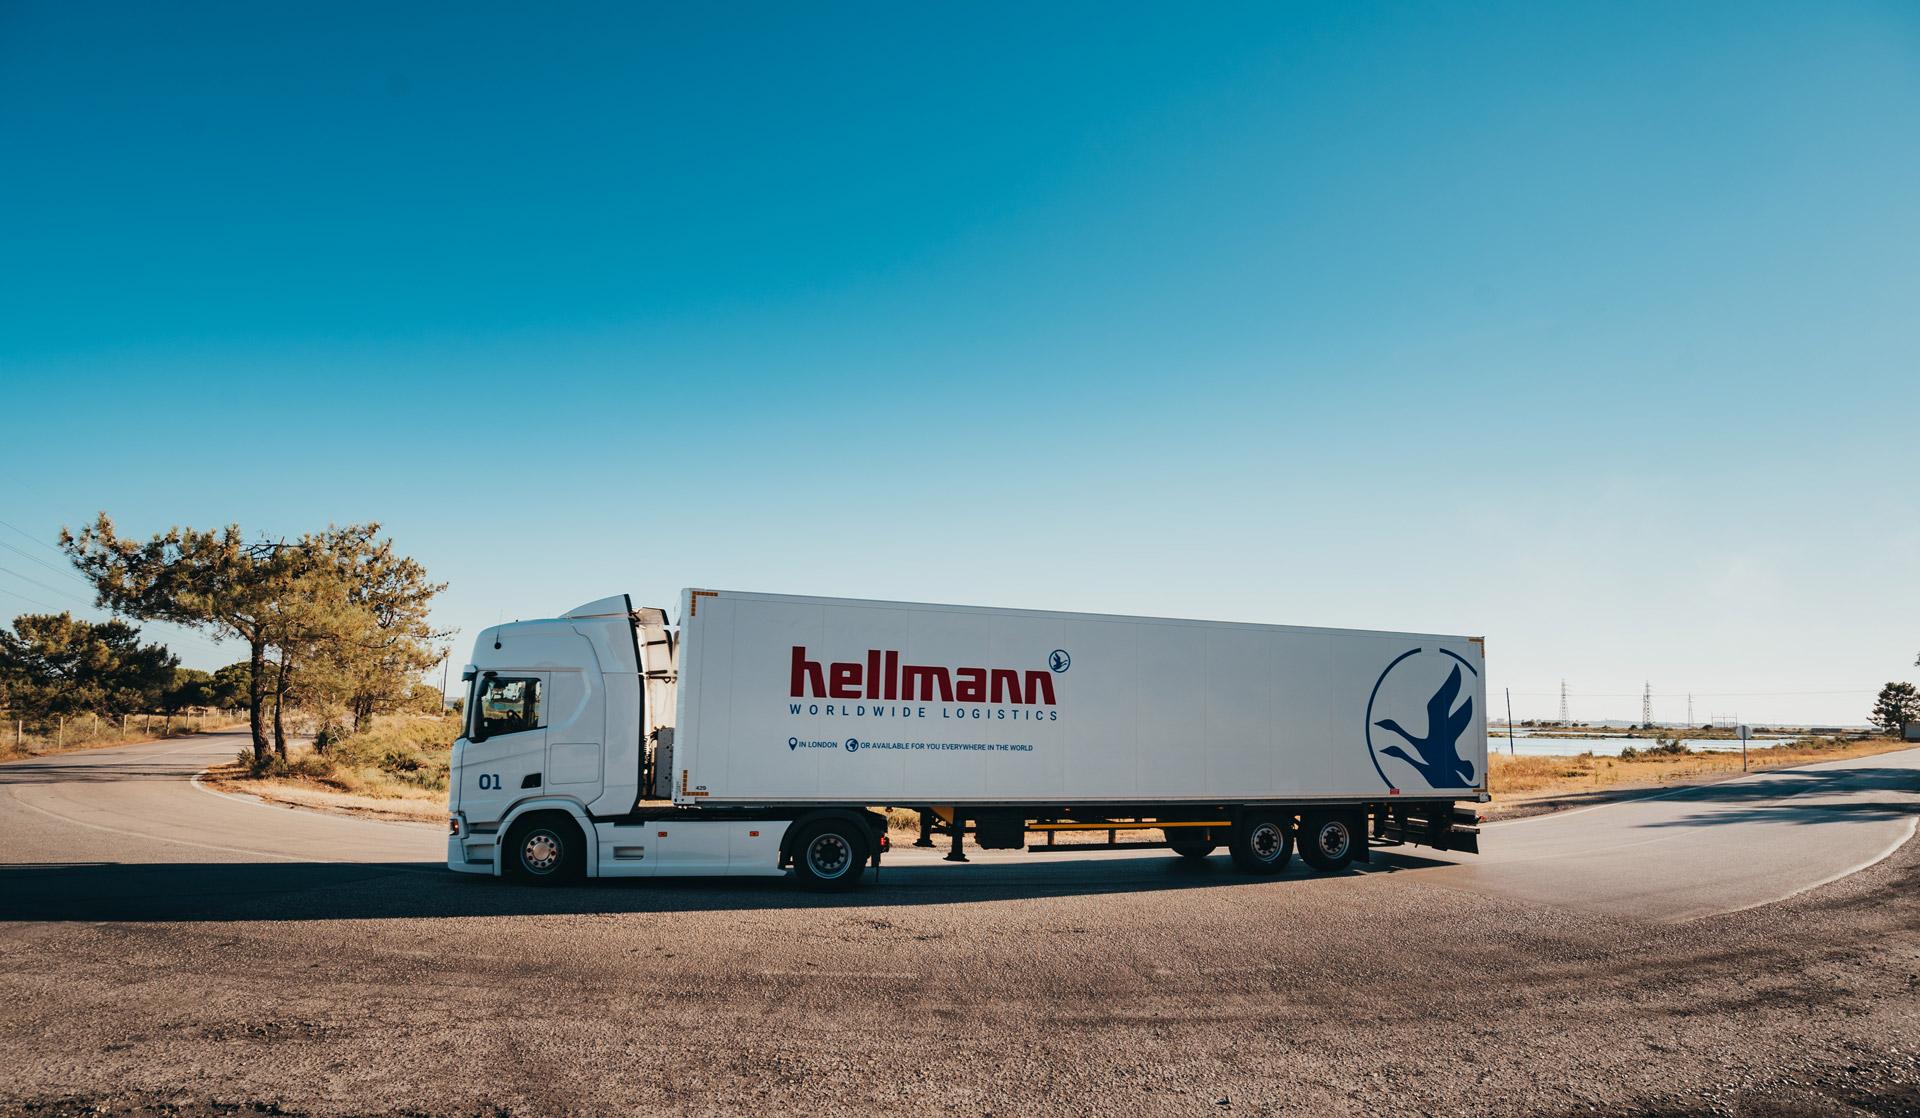 Ein LKW der Firma Hellmann steht auf der Straße.